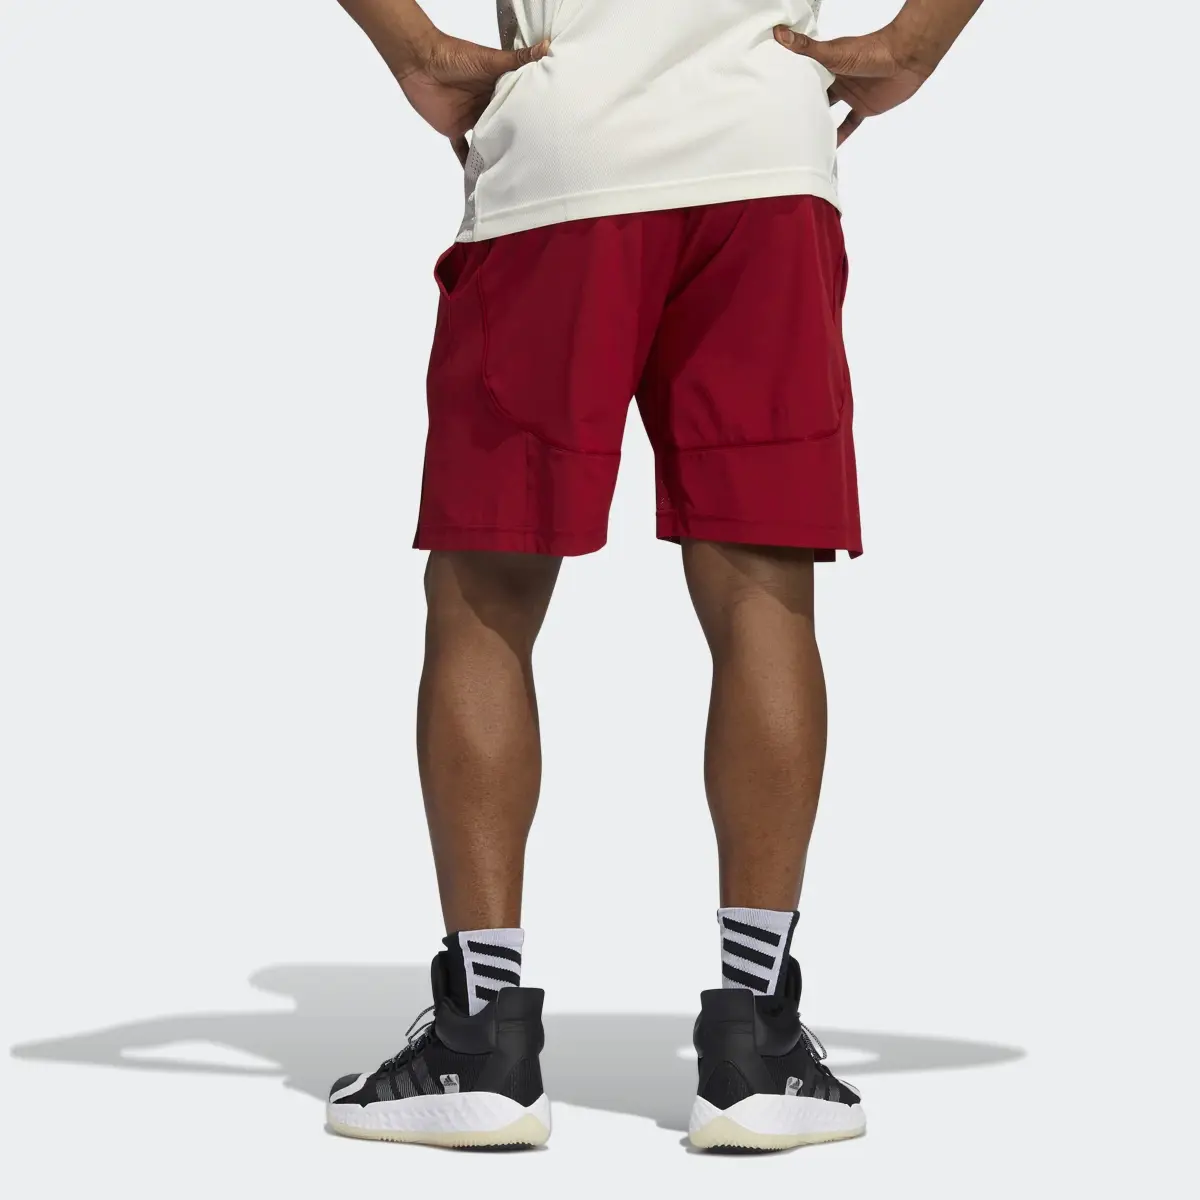 Adidas Hoosiers NCAA Swingman Shorts. 2